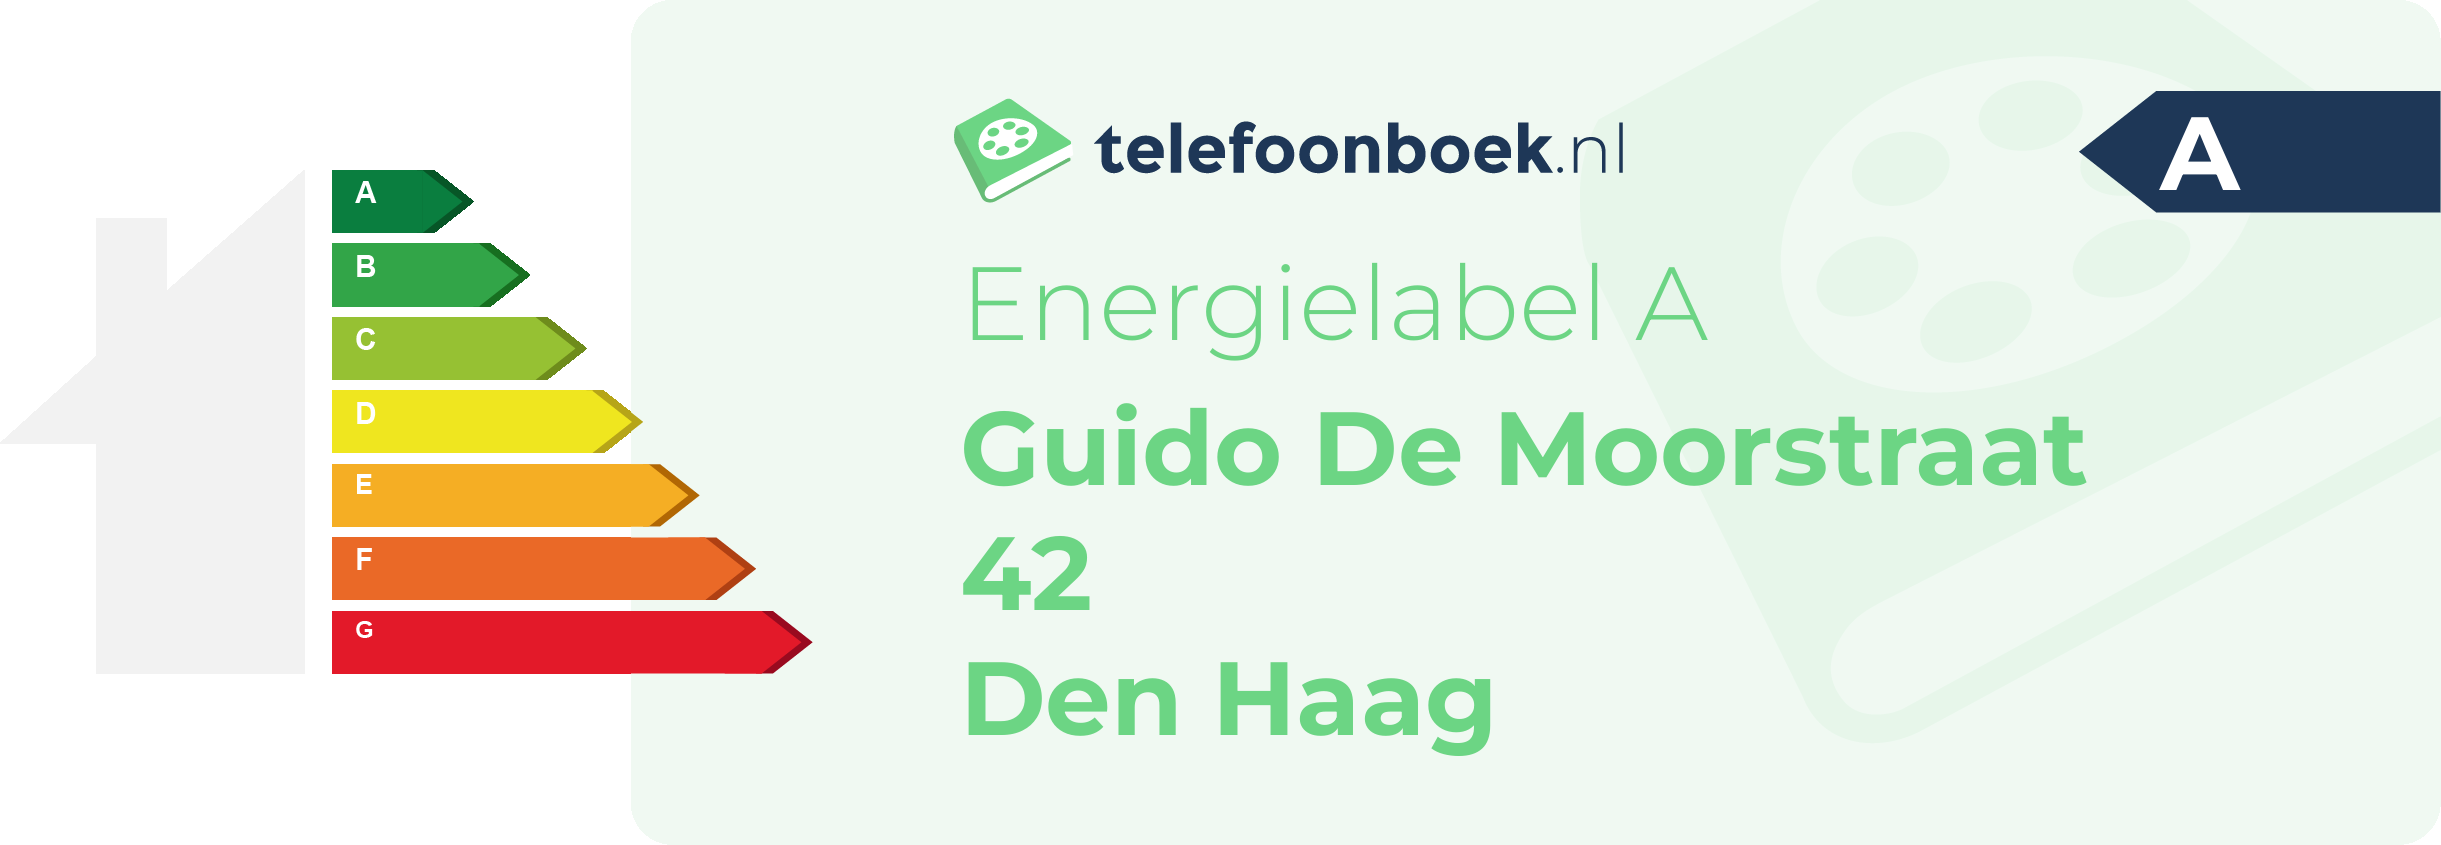 Energielabel Guido De Moorstraat 42 Den Haag